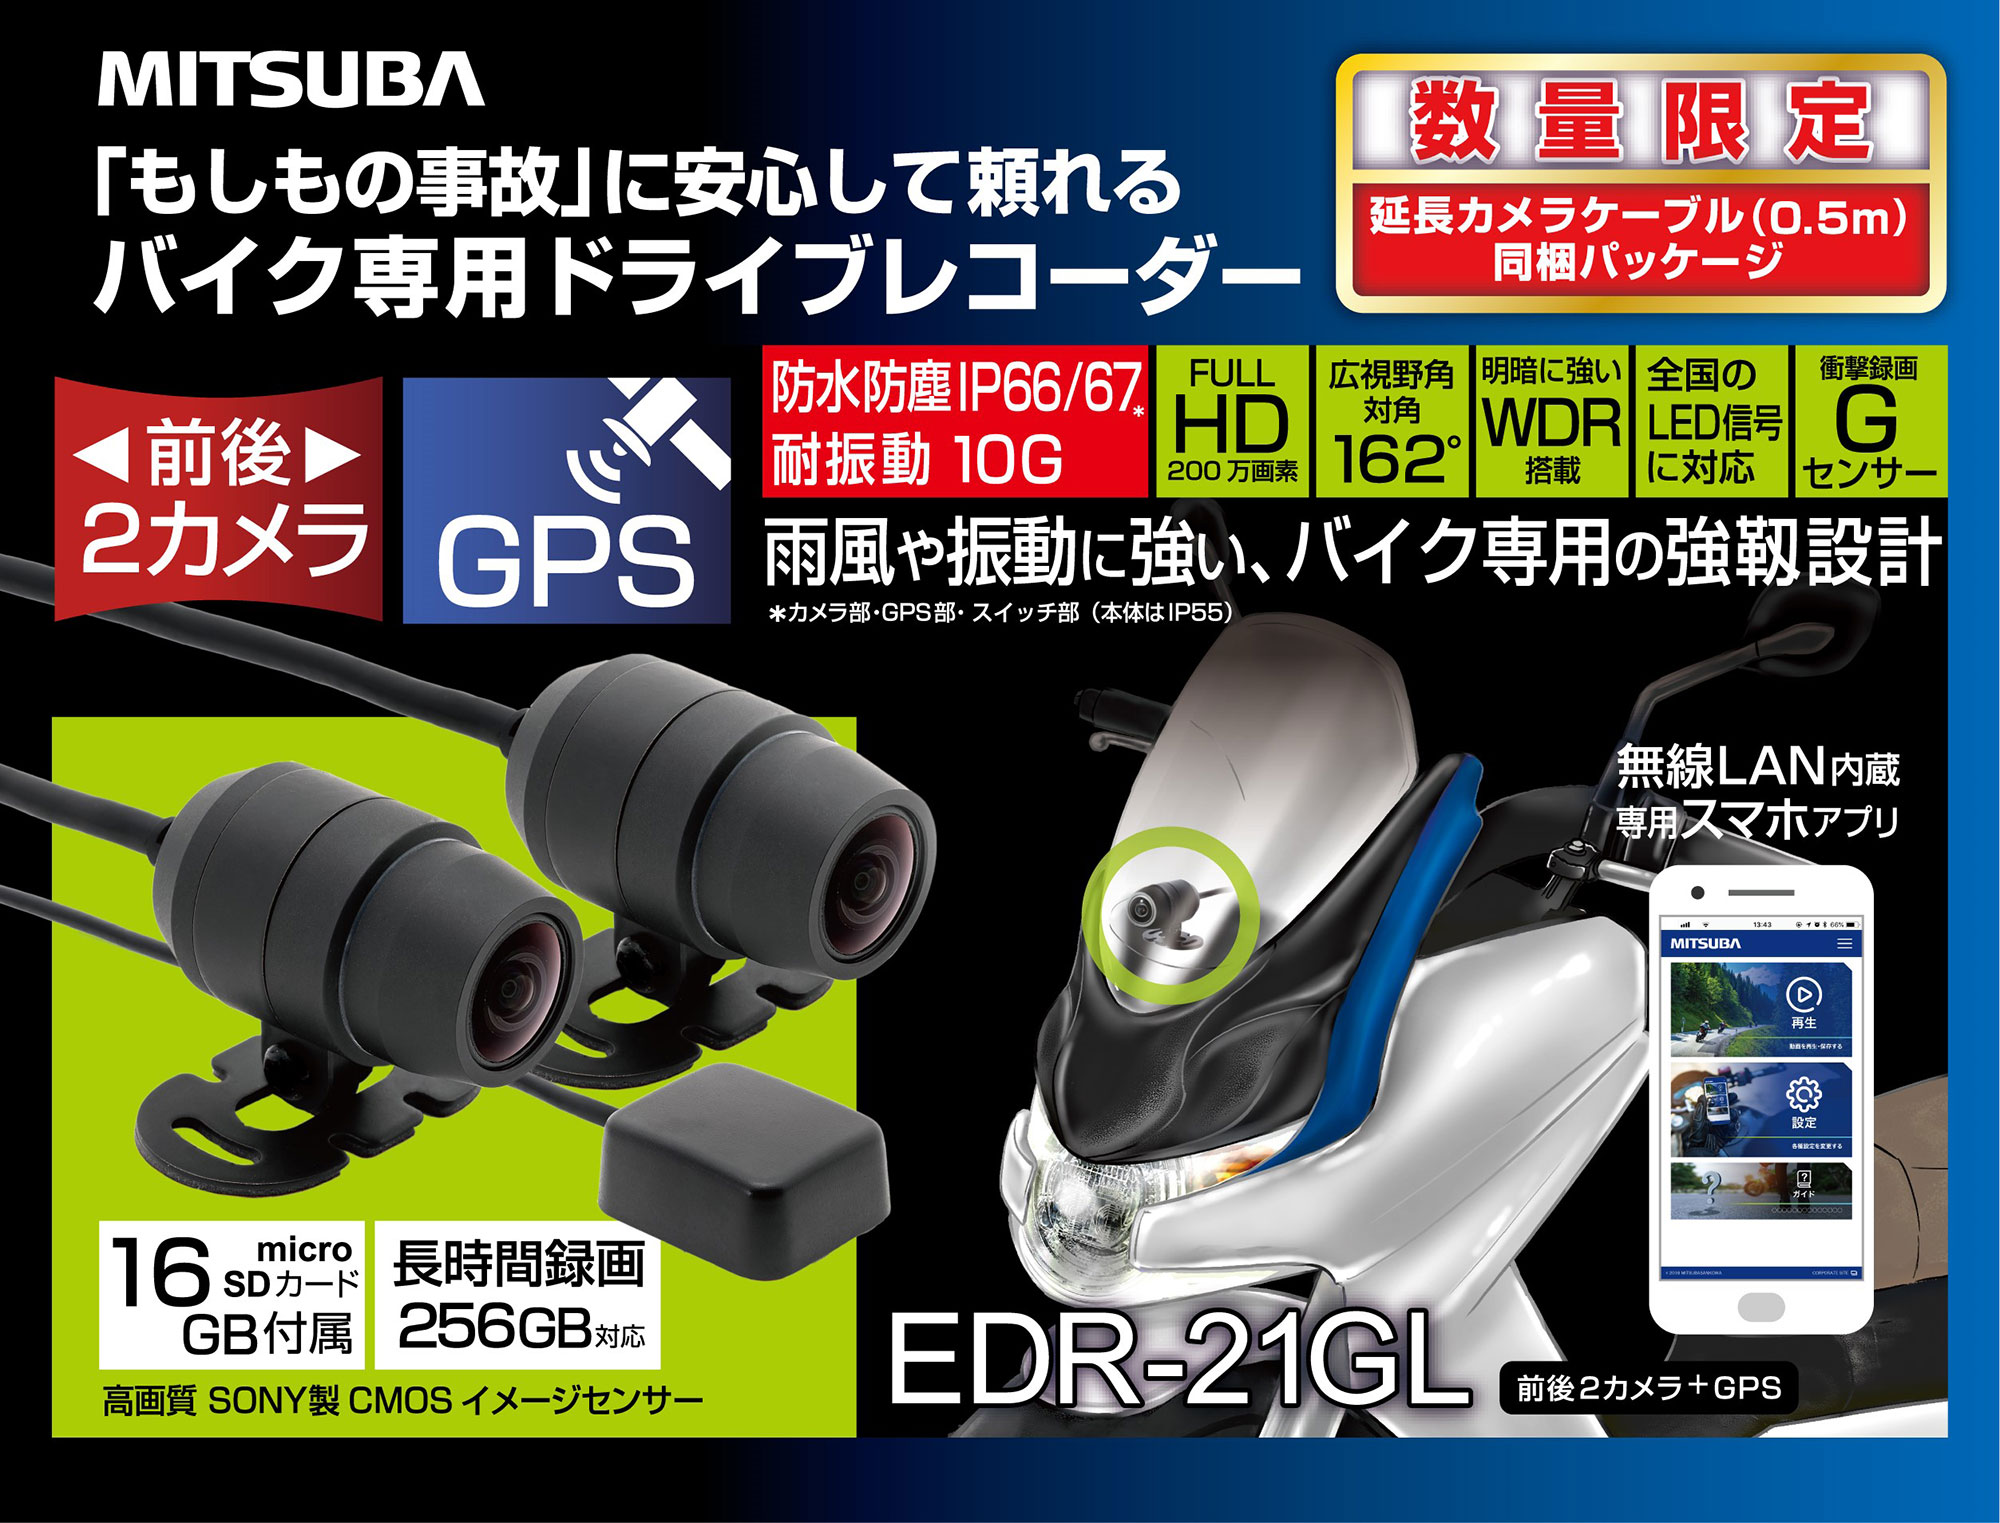 ドライブレコーダー「EDRシリーズ」ロングケーブルセット「EDR-21GL」発売のお知らせ